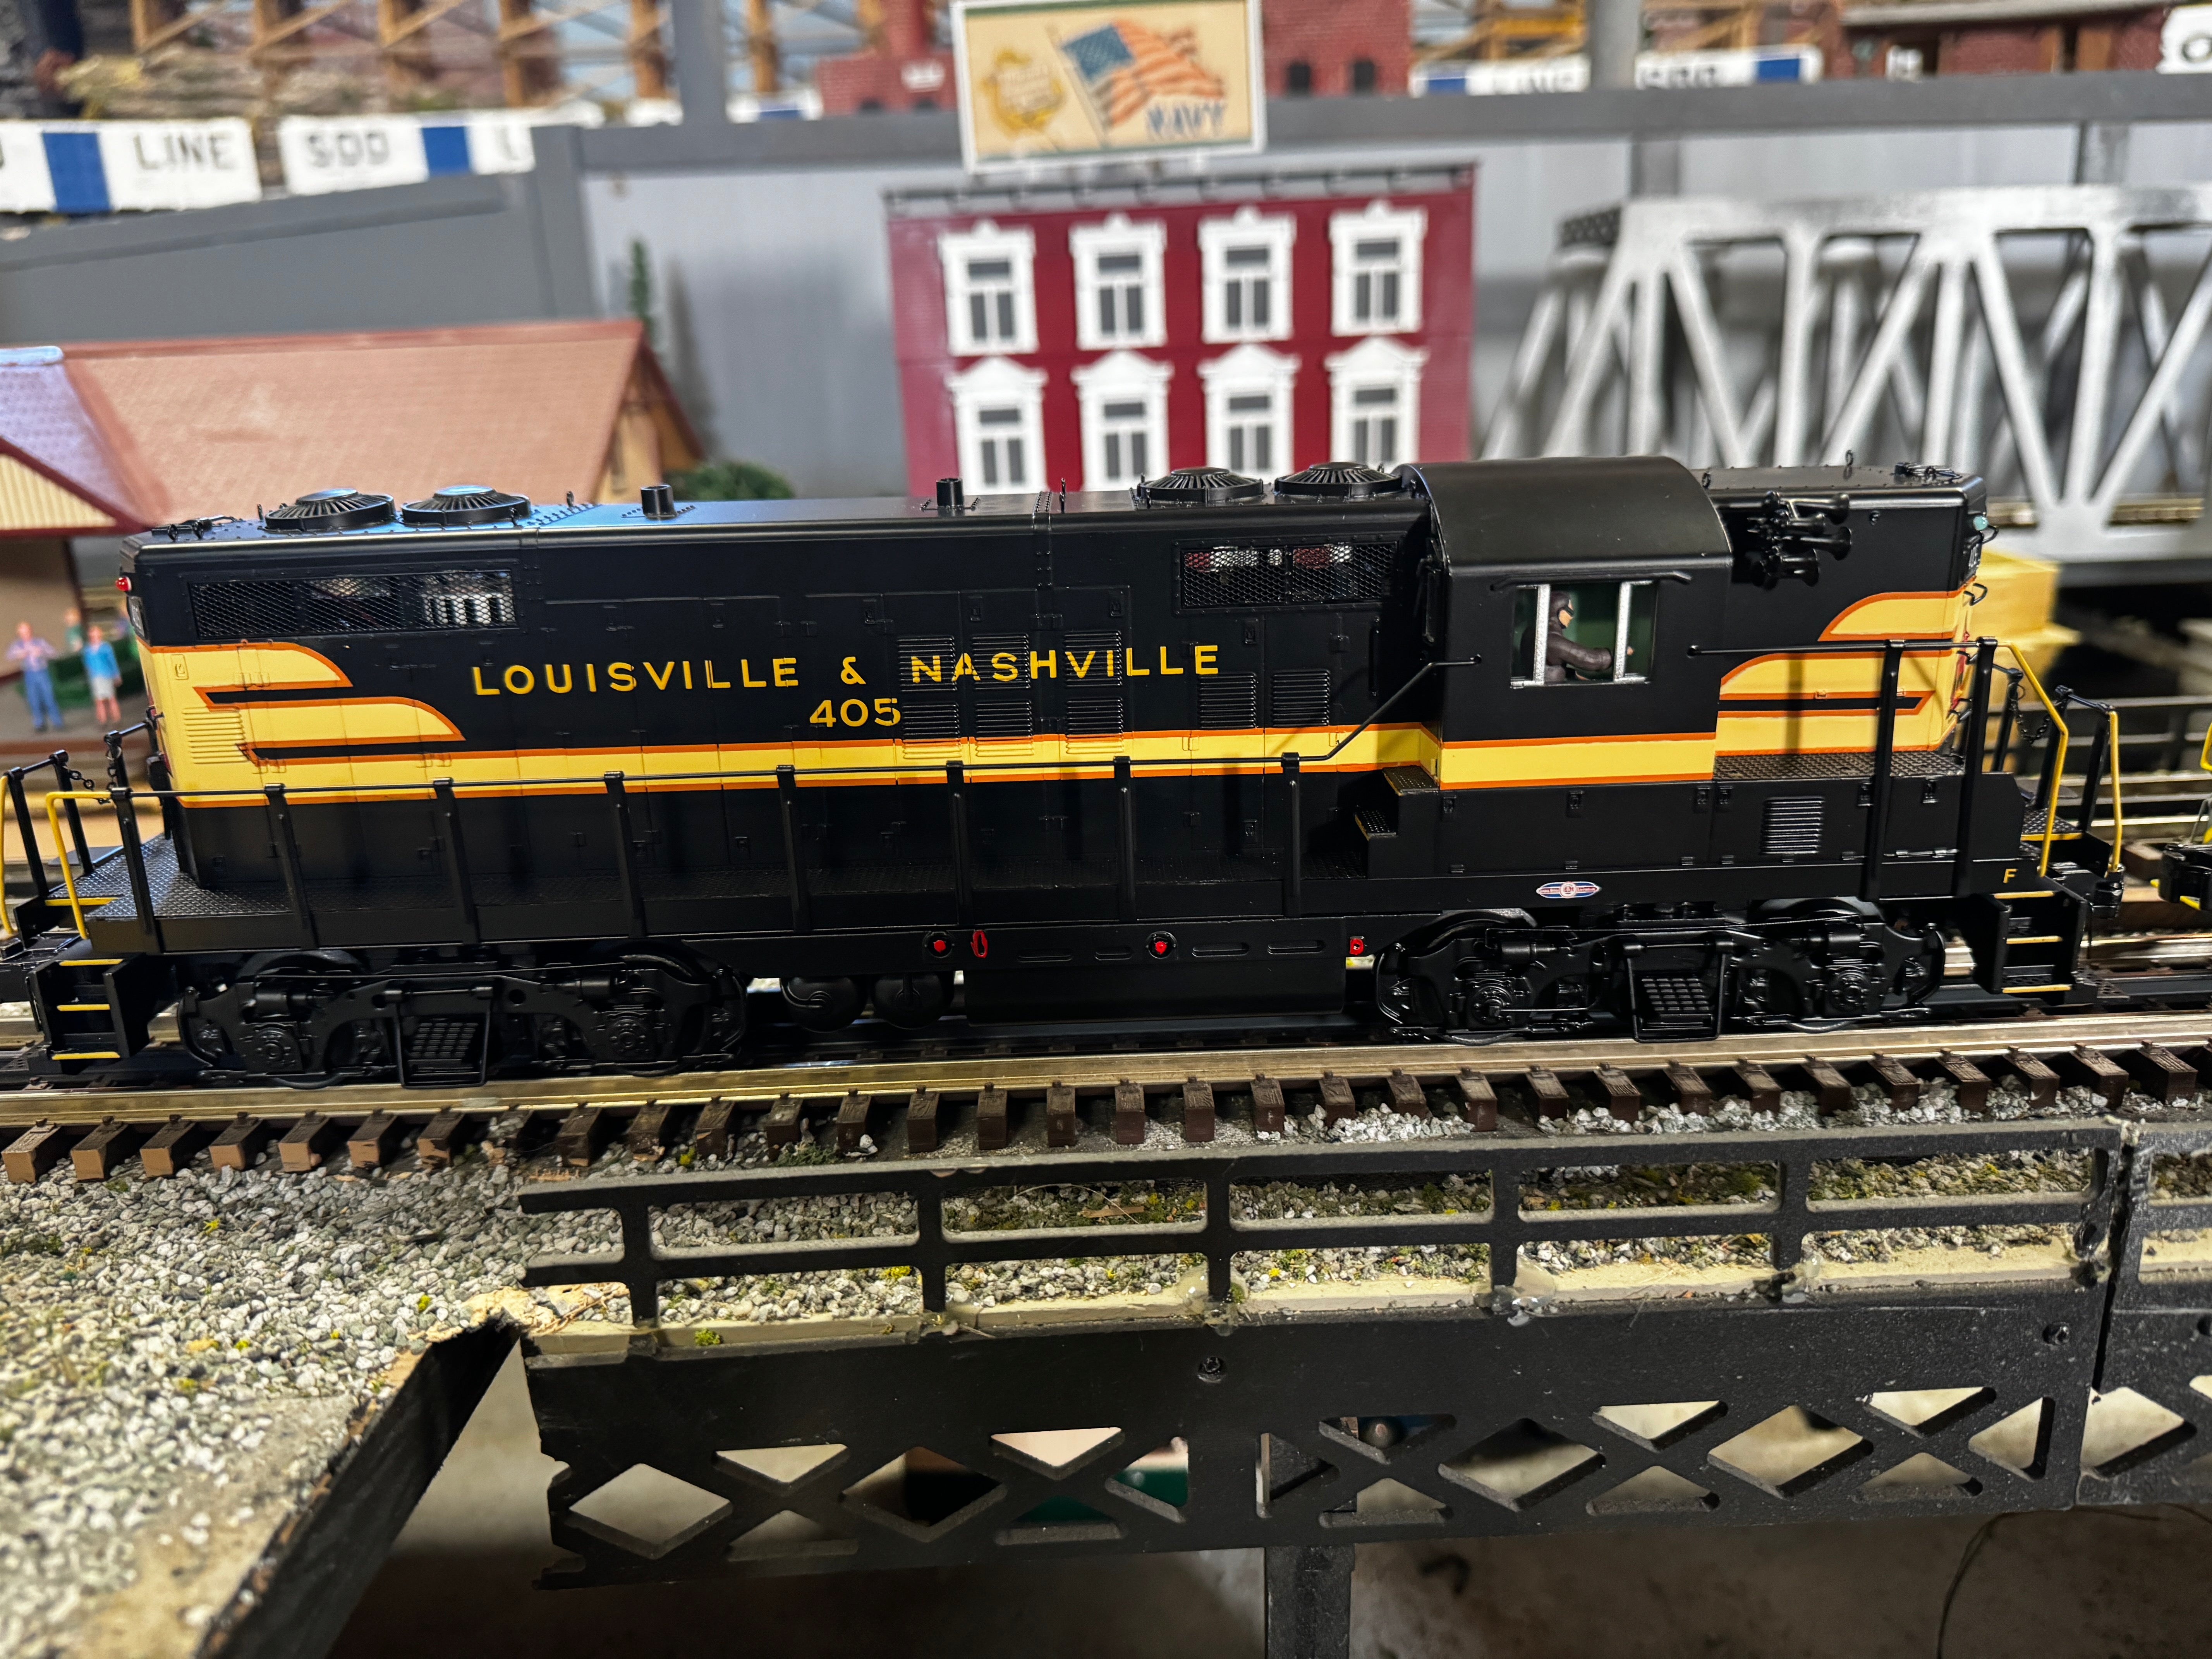 MTH 20-21743-1 - GP-7 Diesel Engine "Louisville & Nashville" #405 w/ PS3 - Custom Run for MrMuffin'sTrains